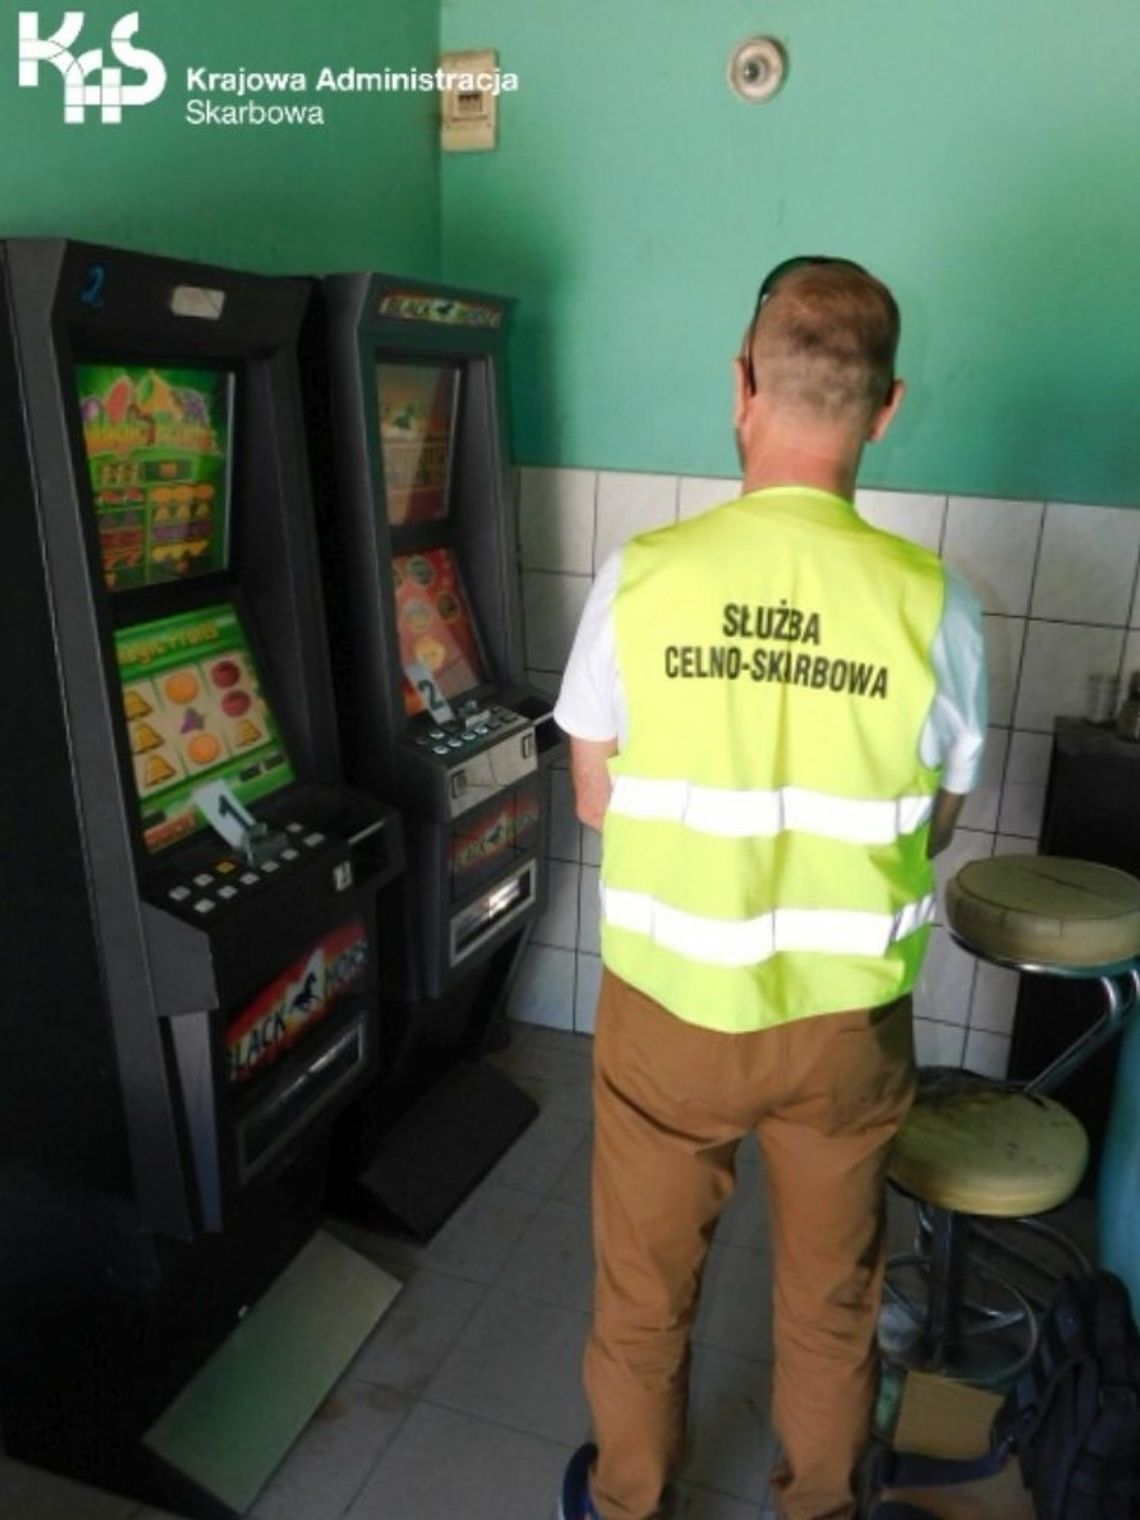 Pomorska KAS wyeliminowała 441 nielegalnych automatów do gier hazardowych